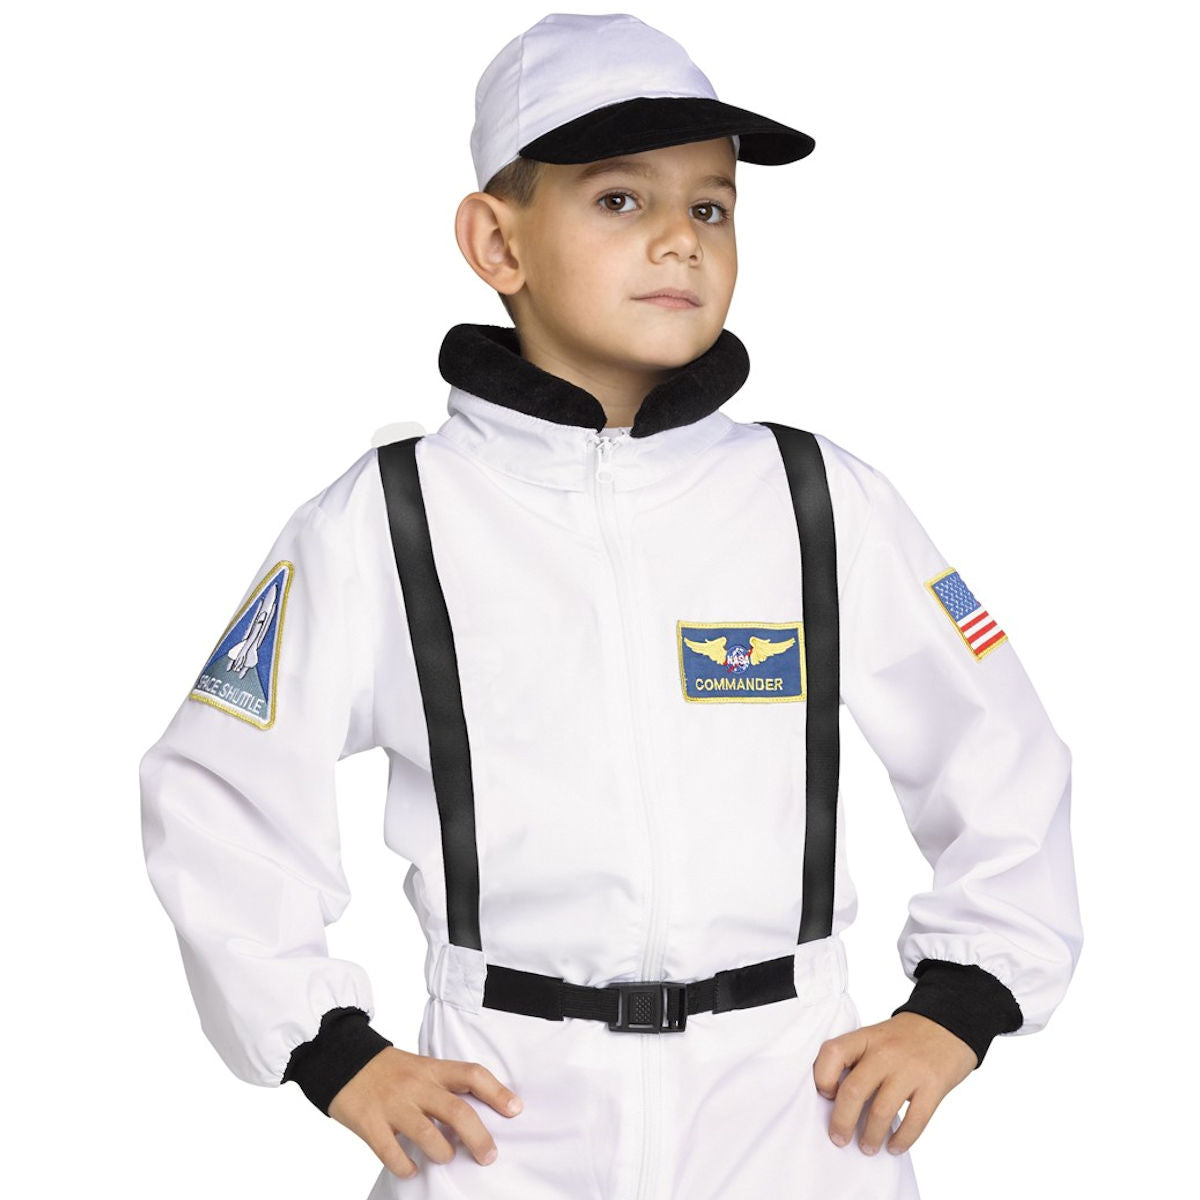 Astronaut Shuttle Commander Boys Costume NASA Licensed